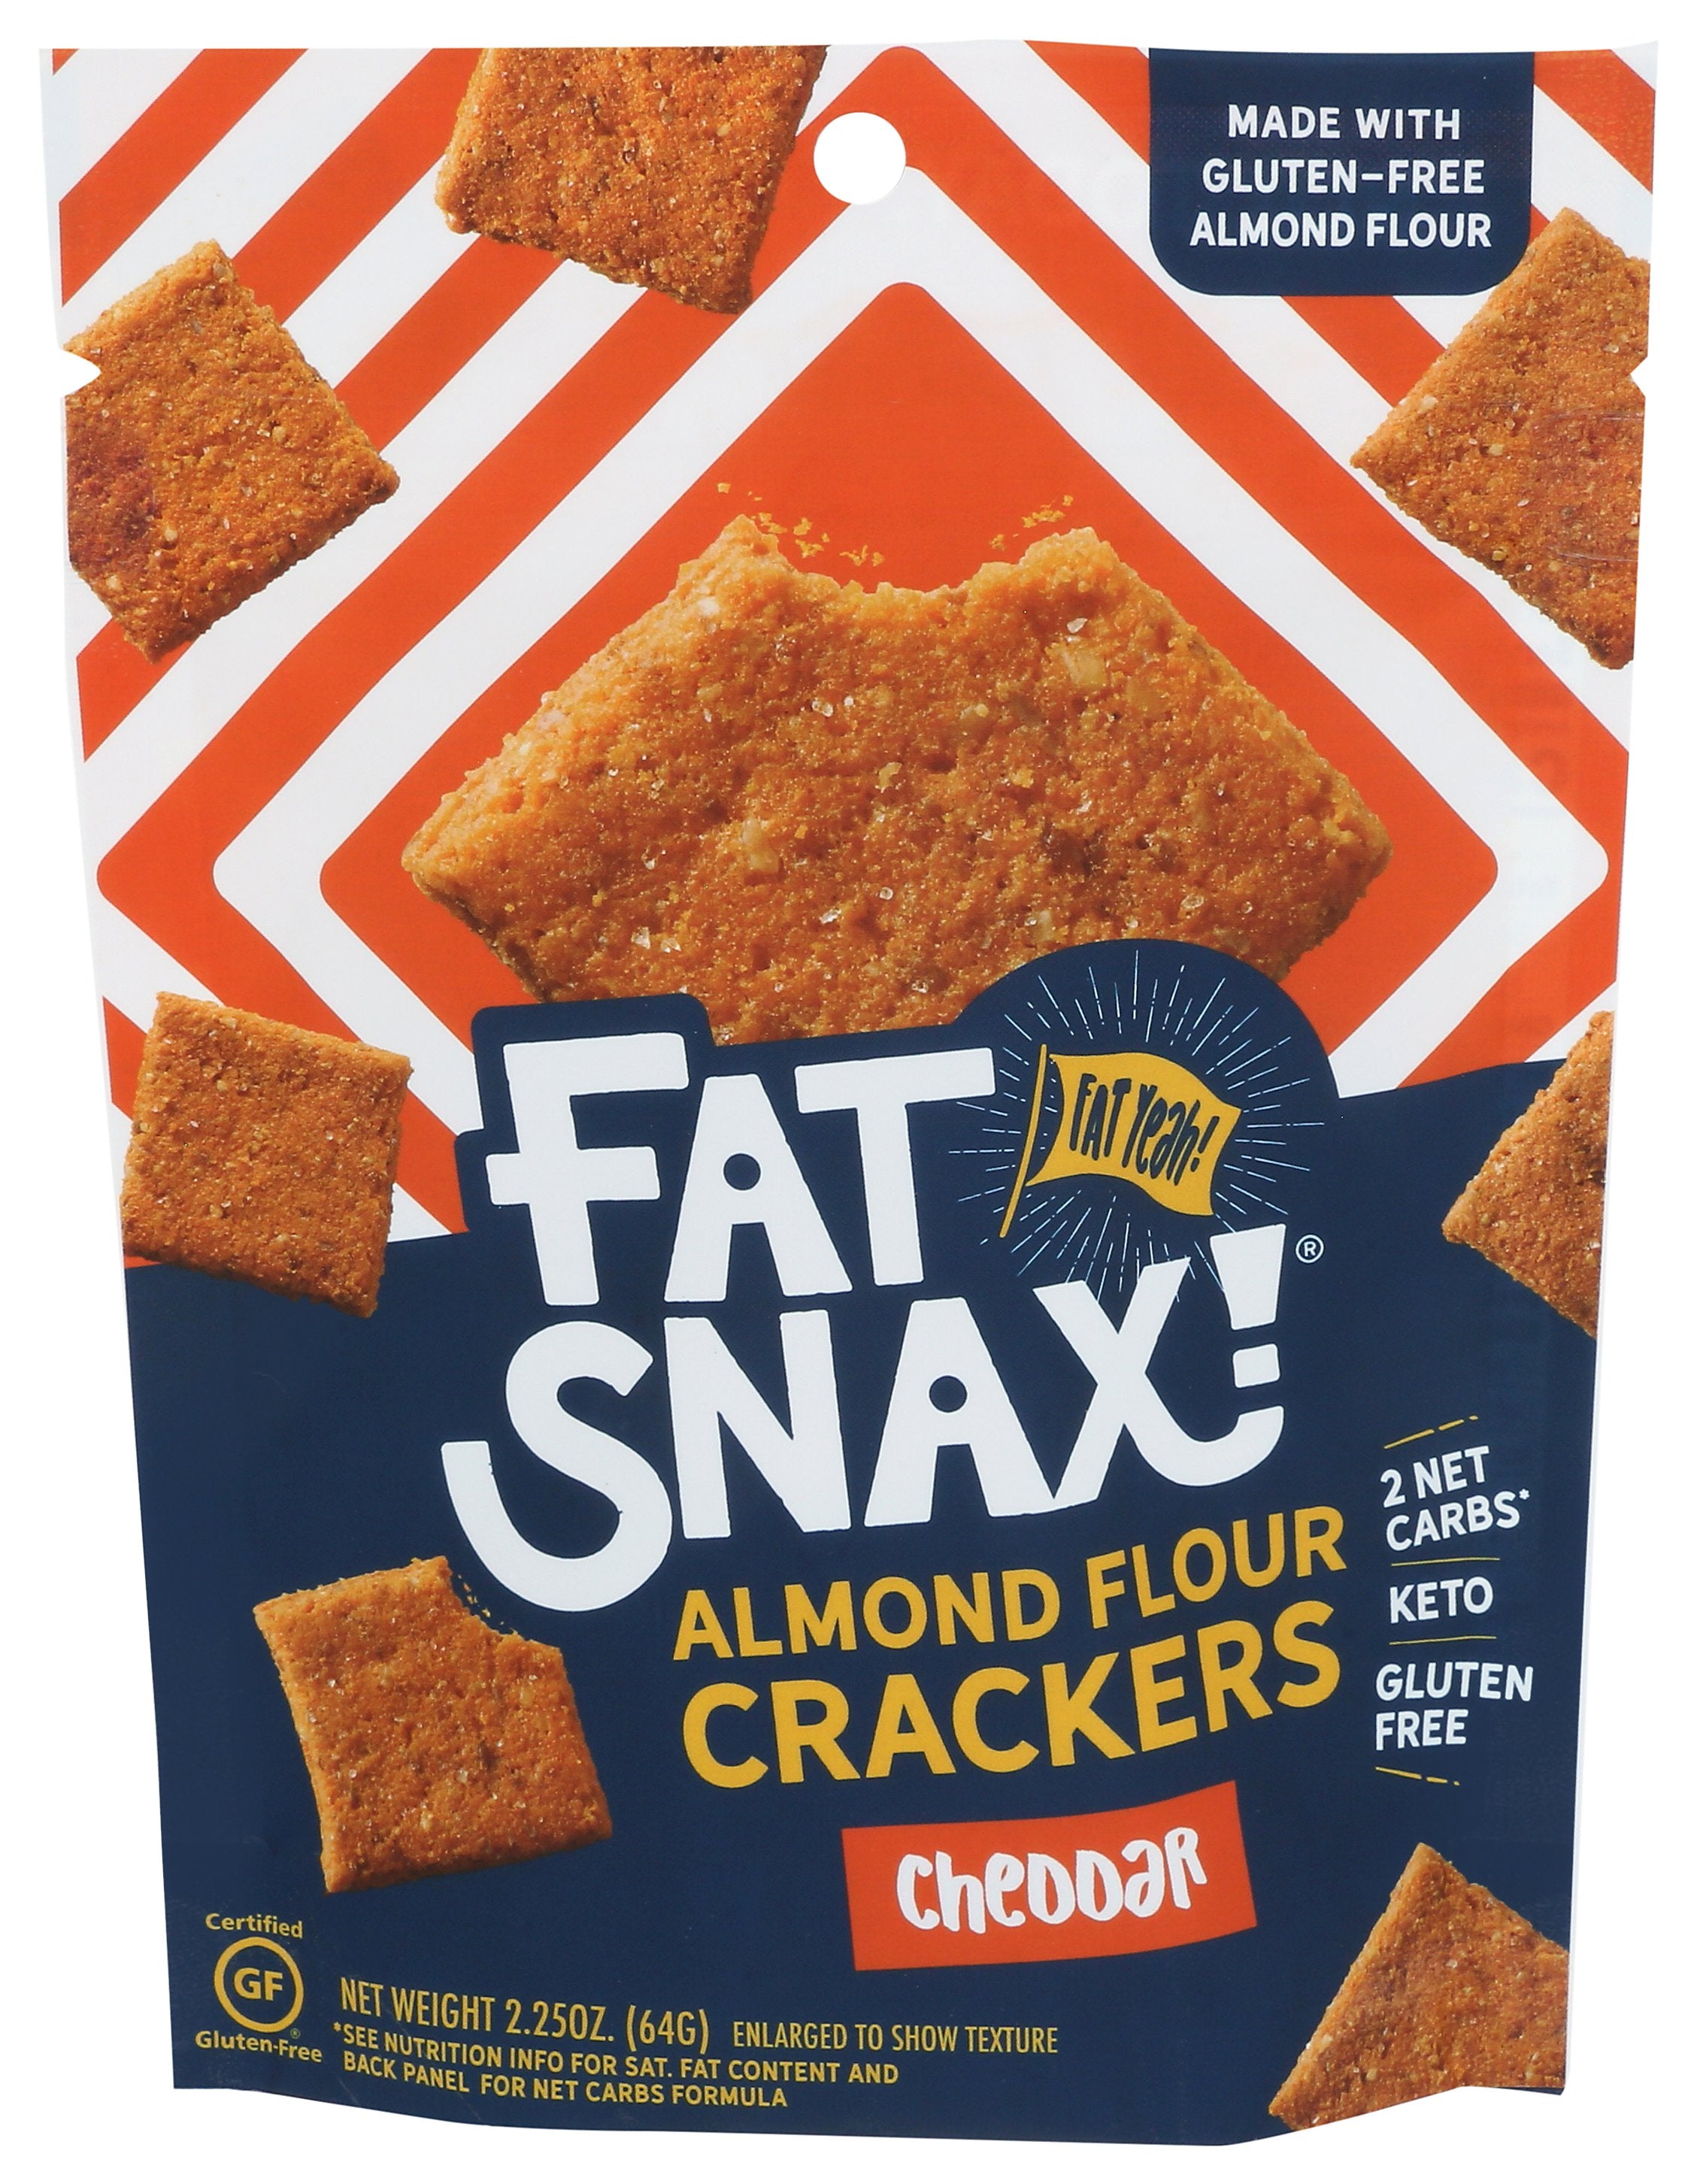 FAT SNAX CRACKER ALM FLR CHEDDAR - Case of 8